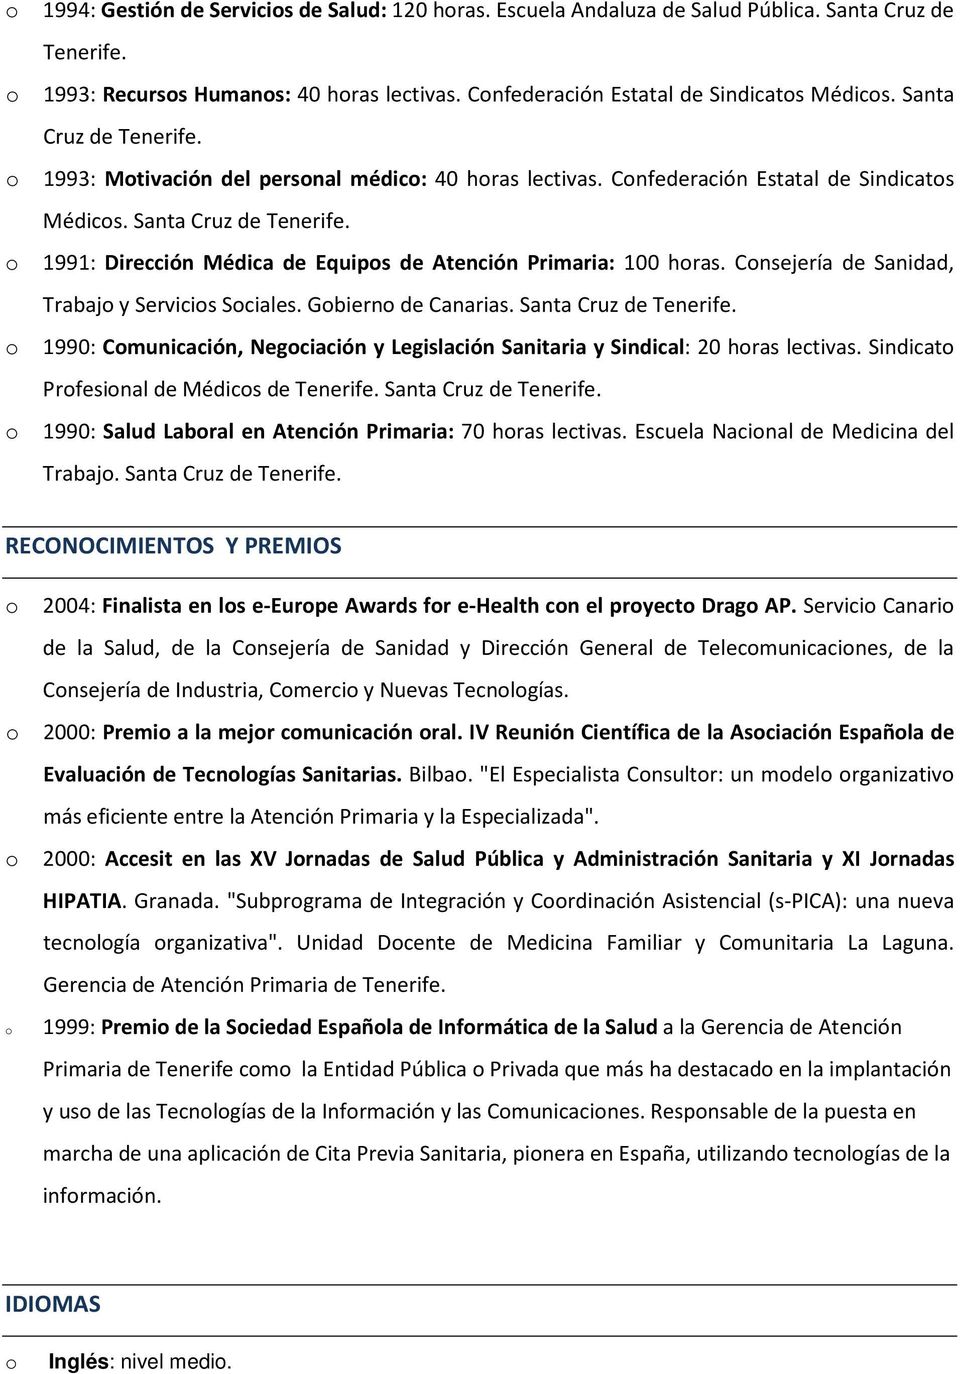 1991: Dirección Médica de Equips de Atención Primaria: 100 hras. Cnsejería de Sanidad, Trabaj y Servicis Sciales. Gbiern de Canarias. Santa Cruz de Tenerife.